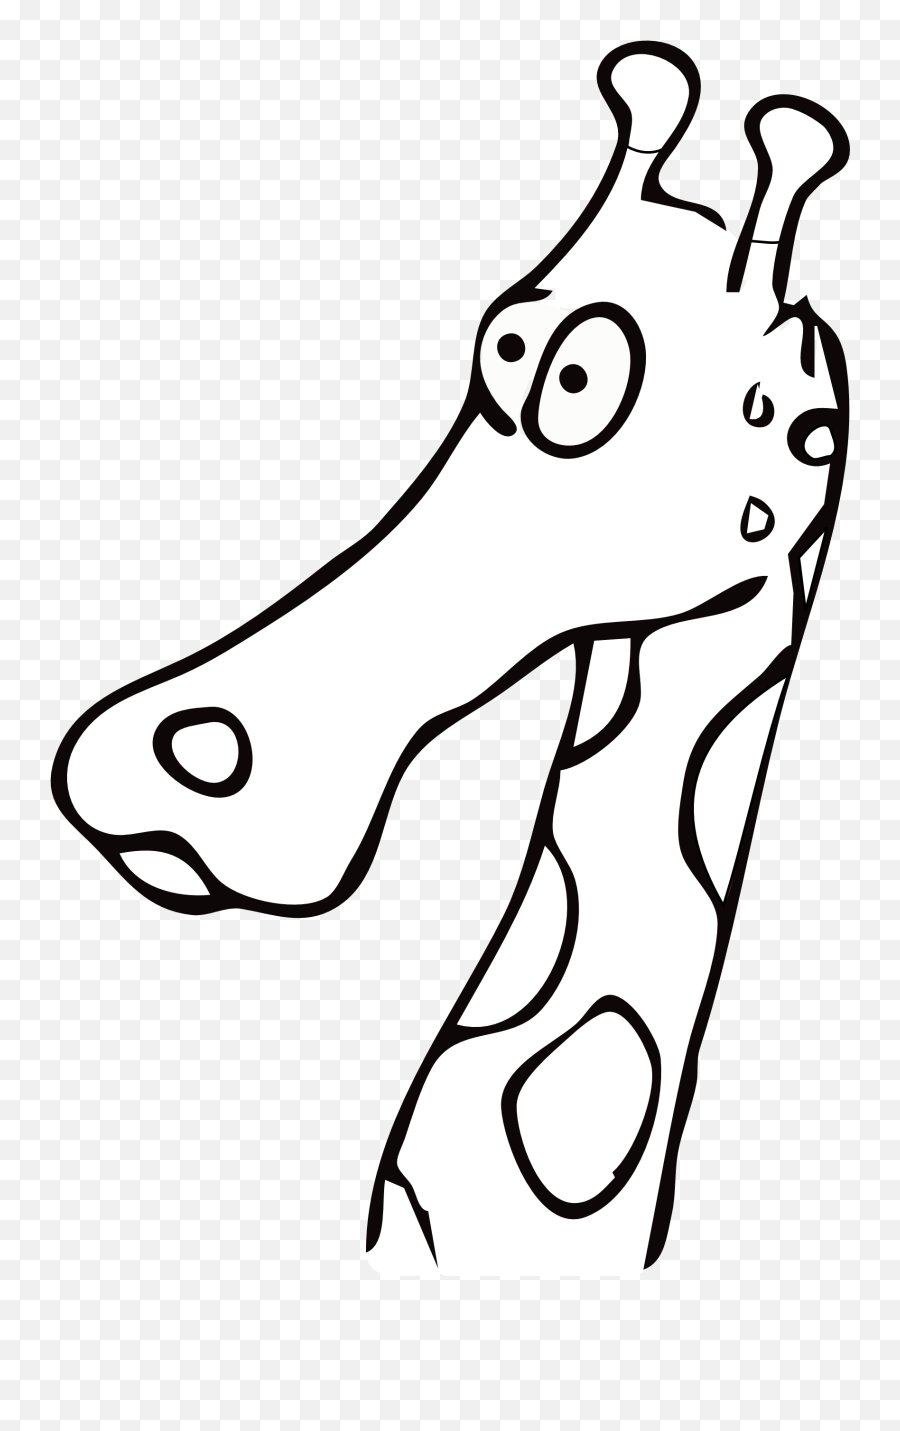 Giraffe Black And White - Clipart Best Line Drawing Giraffe Heads Emoji,Black And White Clipart